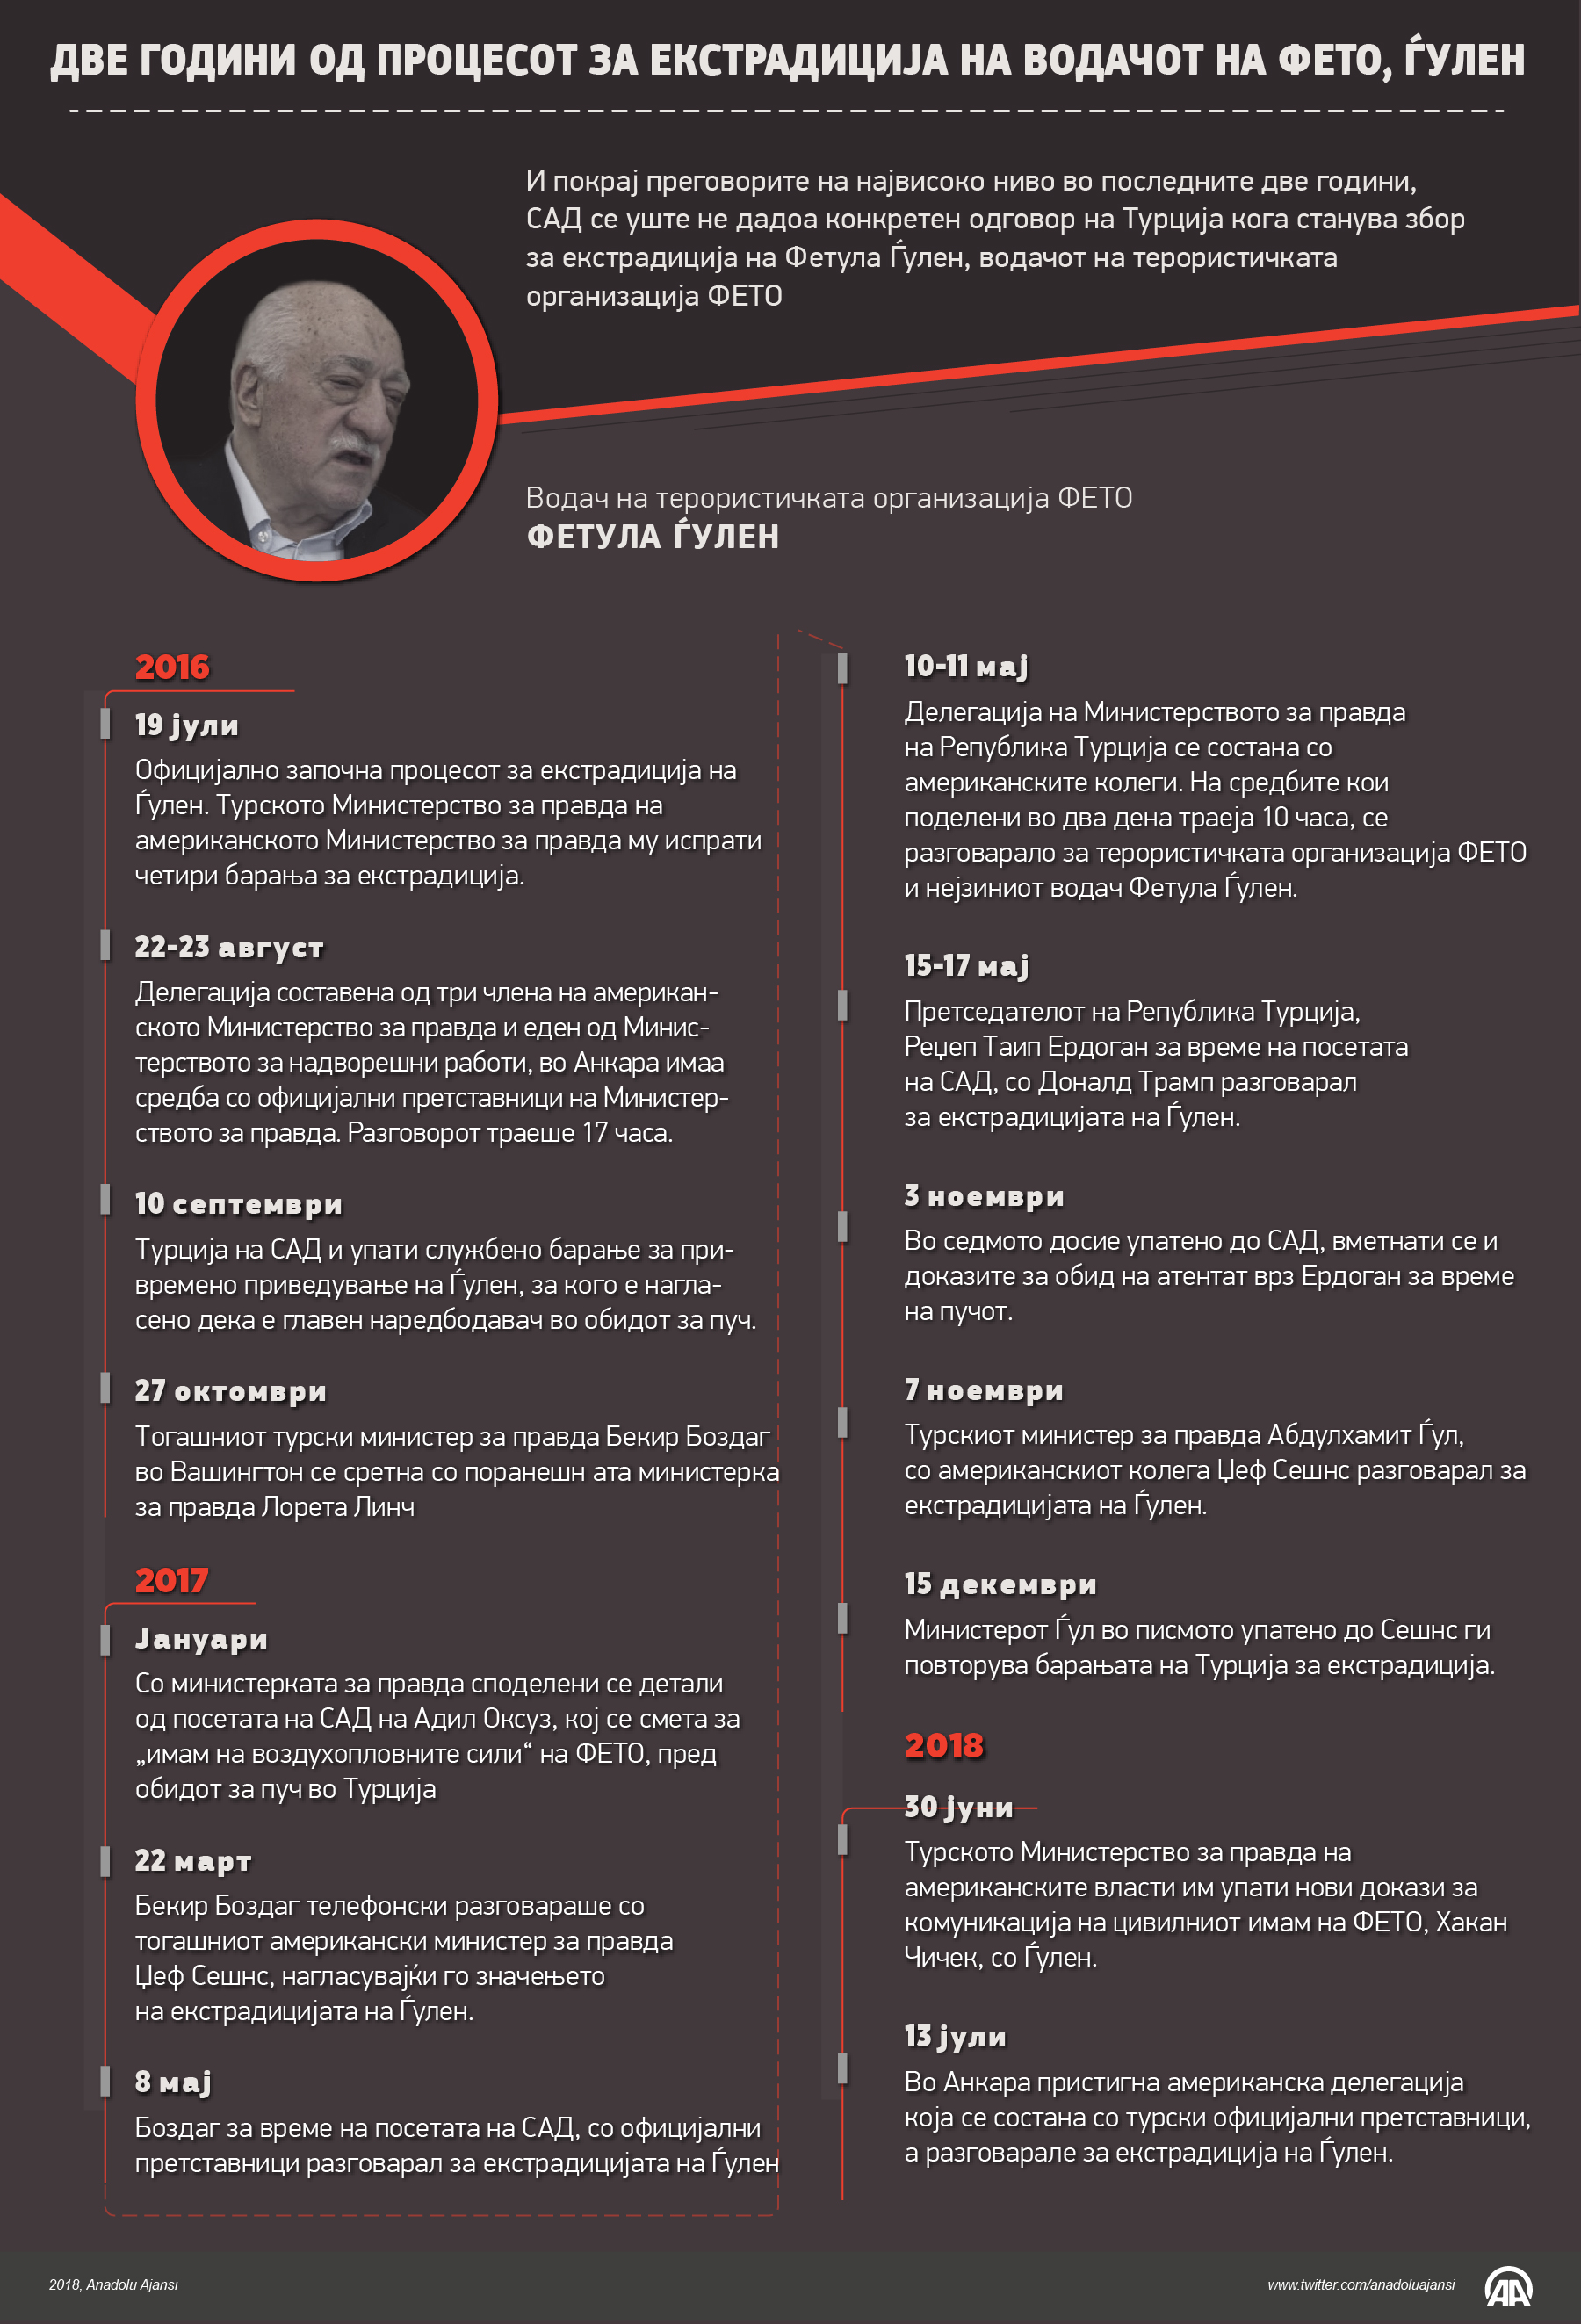 Две години од процесот на екстрадиција на лидерот на ФЕТО, Фетула Ѓулен